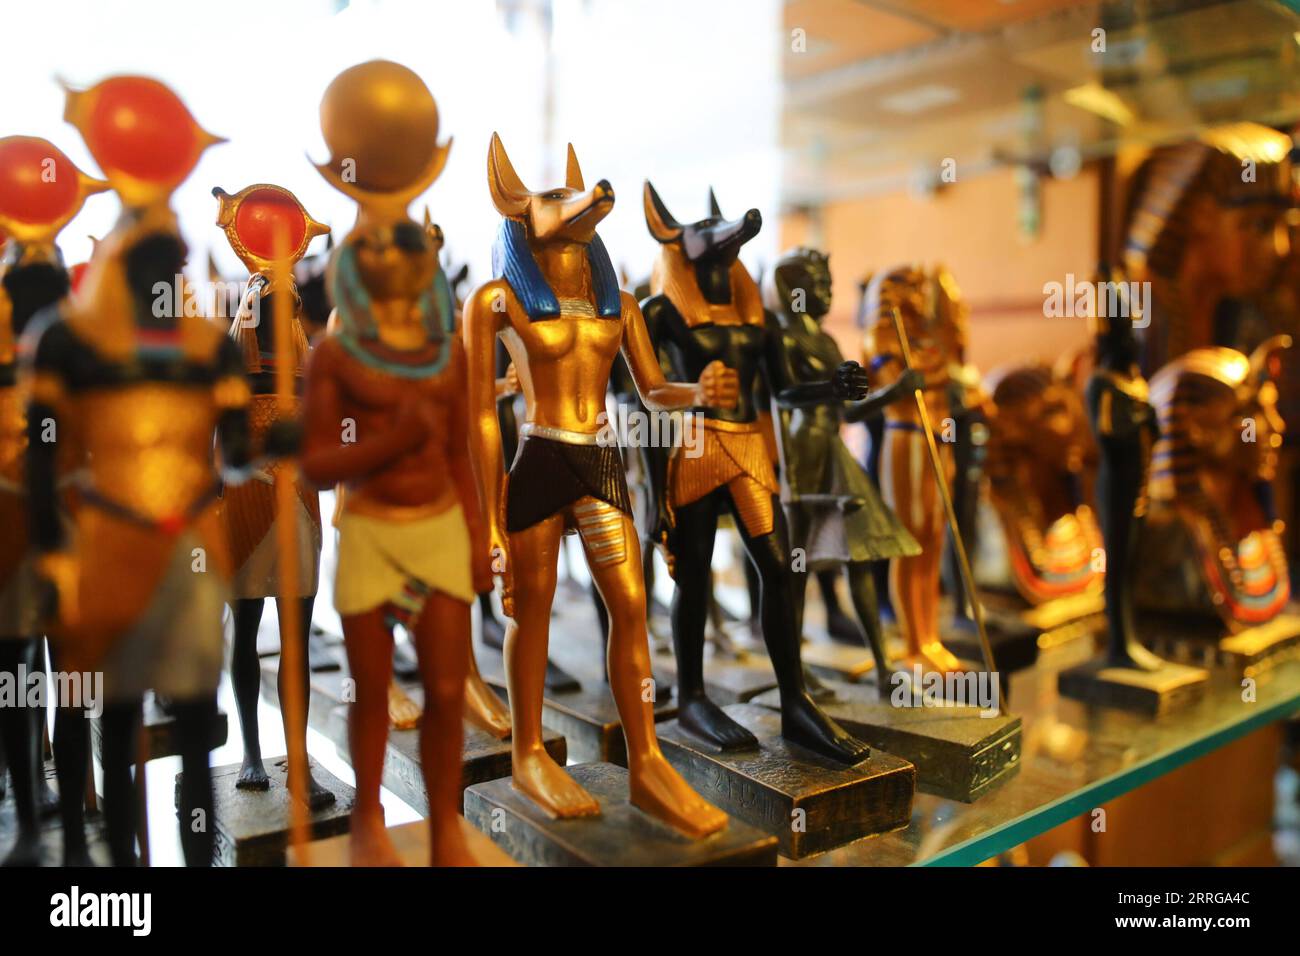 220515 -- KAIRO, 15. Mai 2022 -- Foto aufgenommen am 14. Mai 2022 zeigt die Nachbildung der Statue des Gottes Anubis im Souvenirladen des Ägyptischen Museums in Kairo, Ägypten. Als Begräbnisgottheit wird Anubis mit Mumifizierung, Begräbnisritualen und dem Friedhof im alten ägyptischen Mythos in Verbindung gebracht, der normalerweise als schwarzer Hund oder ein Mann mit Hundekopf dargestellt wird. Es ist in einer großen Anzahl von pharaonischen Antiquitäten im weltbekannten Ägyptischen Museum zu finden. ÄGYPTEN-KAIRO-ÄGYPTISCHES MUSEUM-ANUBIS SuixXiankai PUBLICATIONxNOTxINxCHN Stockfoto